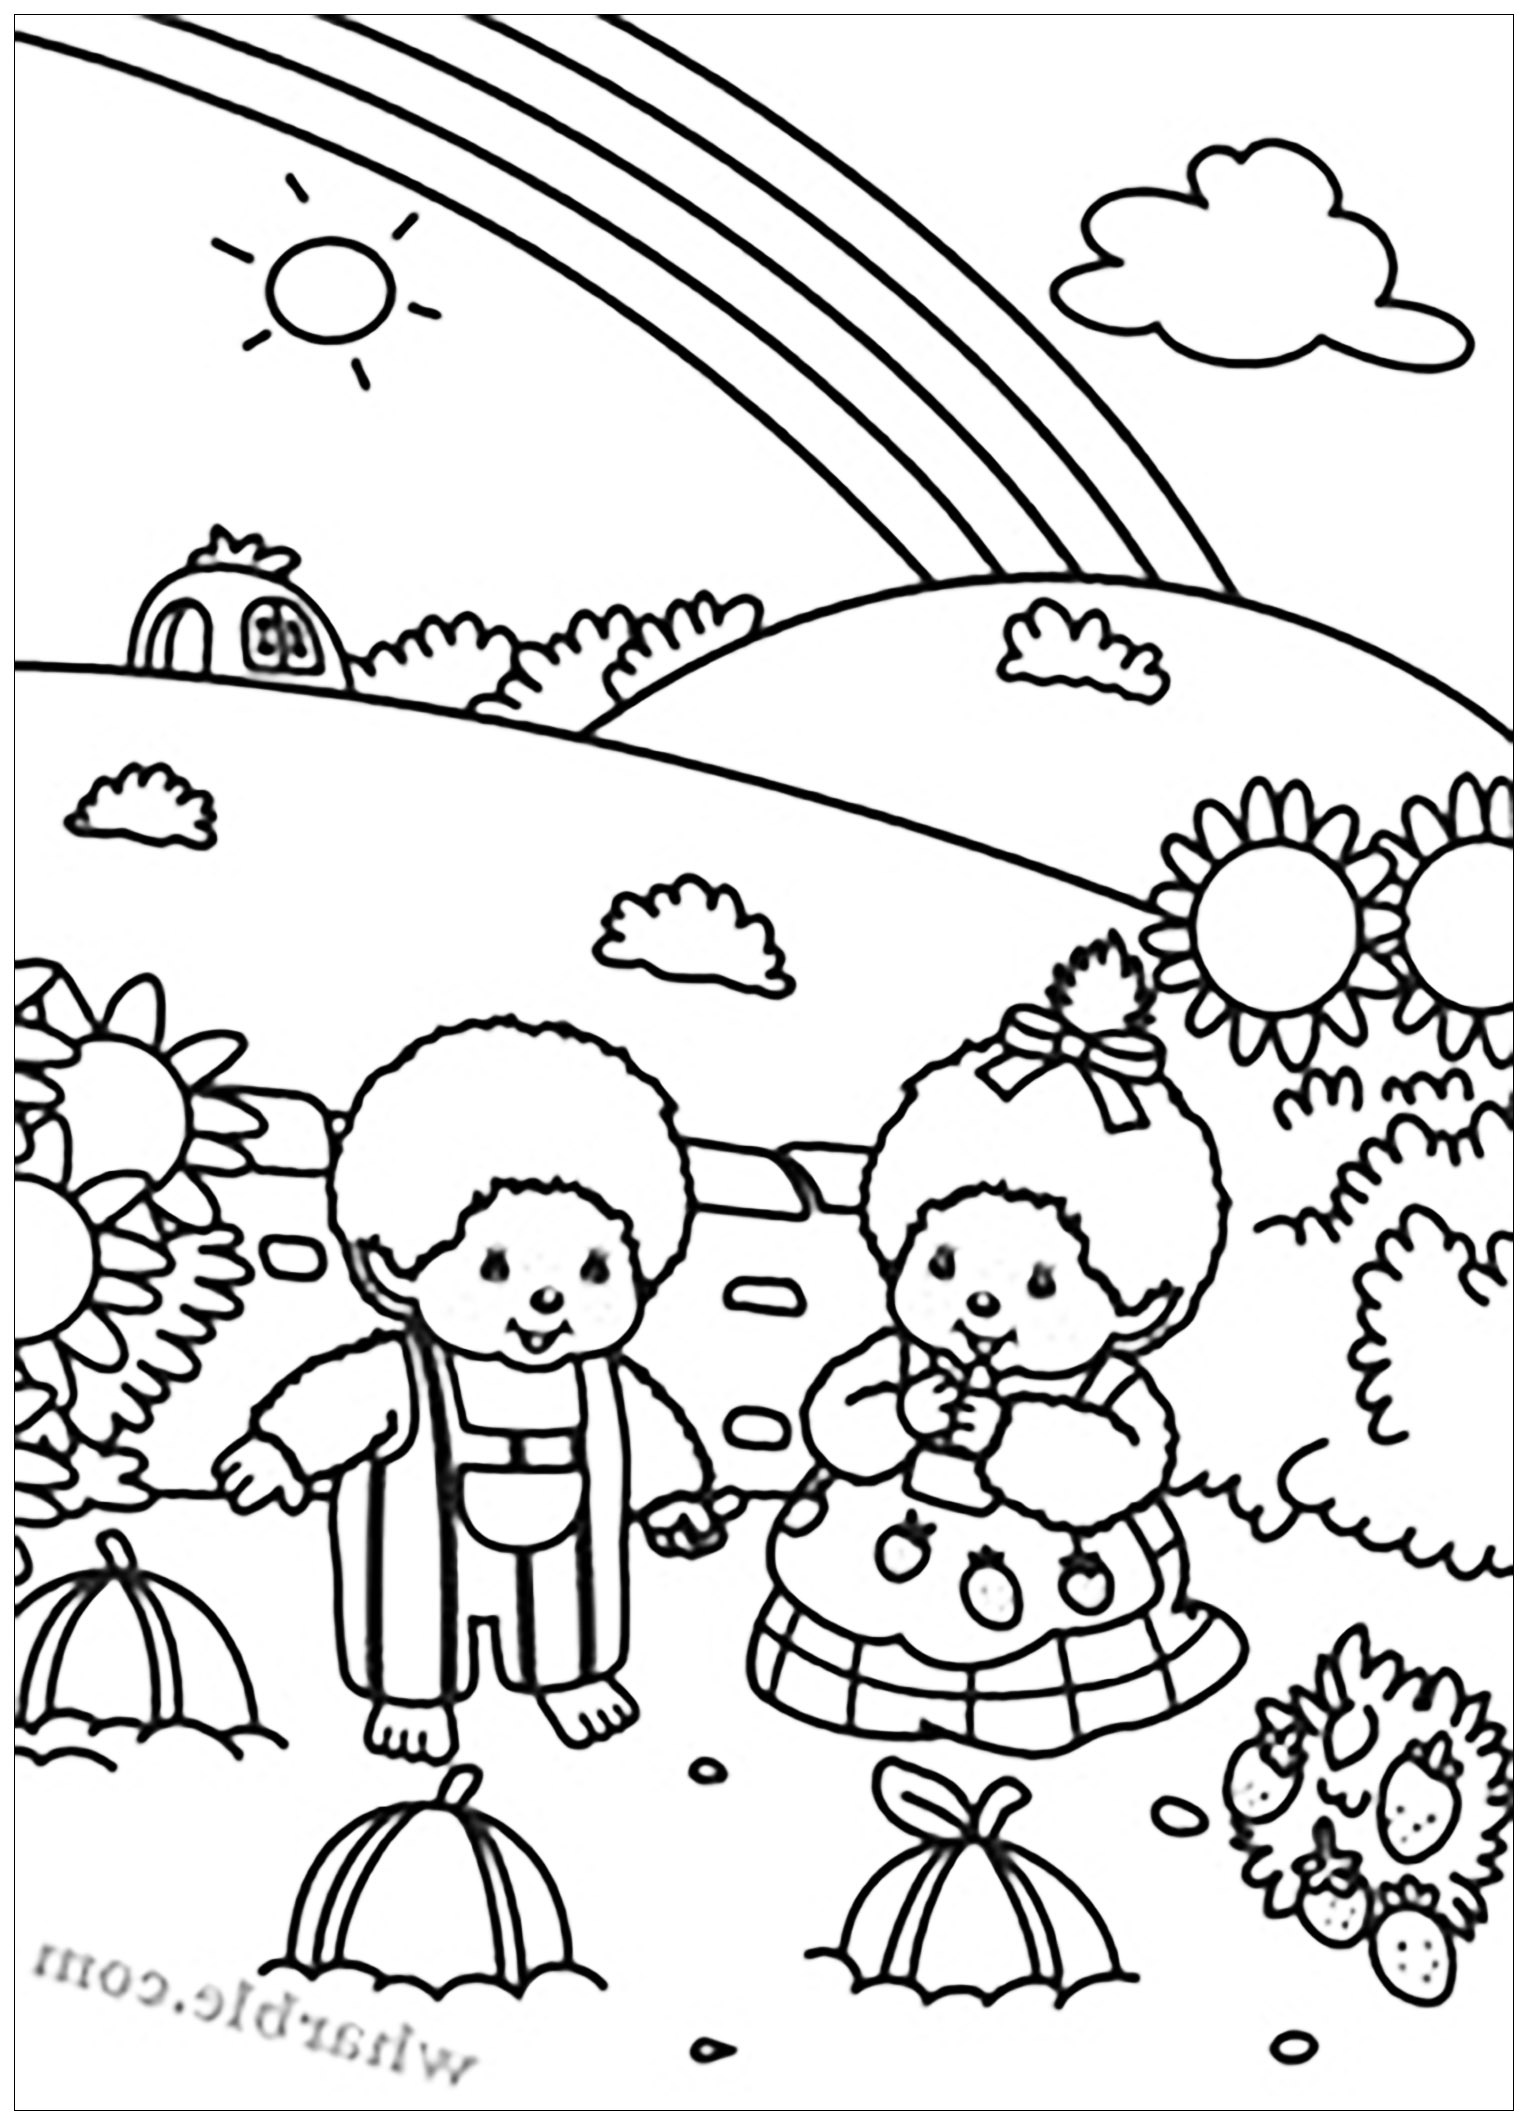 Kiki dans un paysage enchanteur. Deux personnages Kiki dans un joli champ, en pleine cueillette de fraises. Voyez vous ce bel arc-en-ciel ?